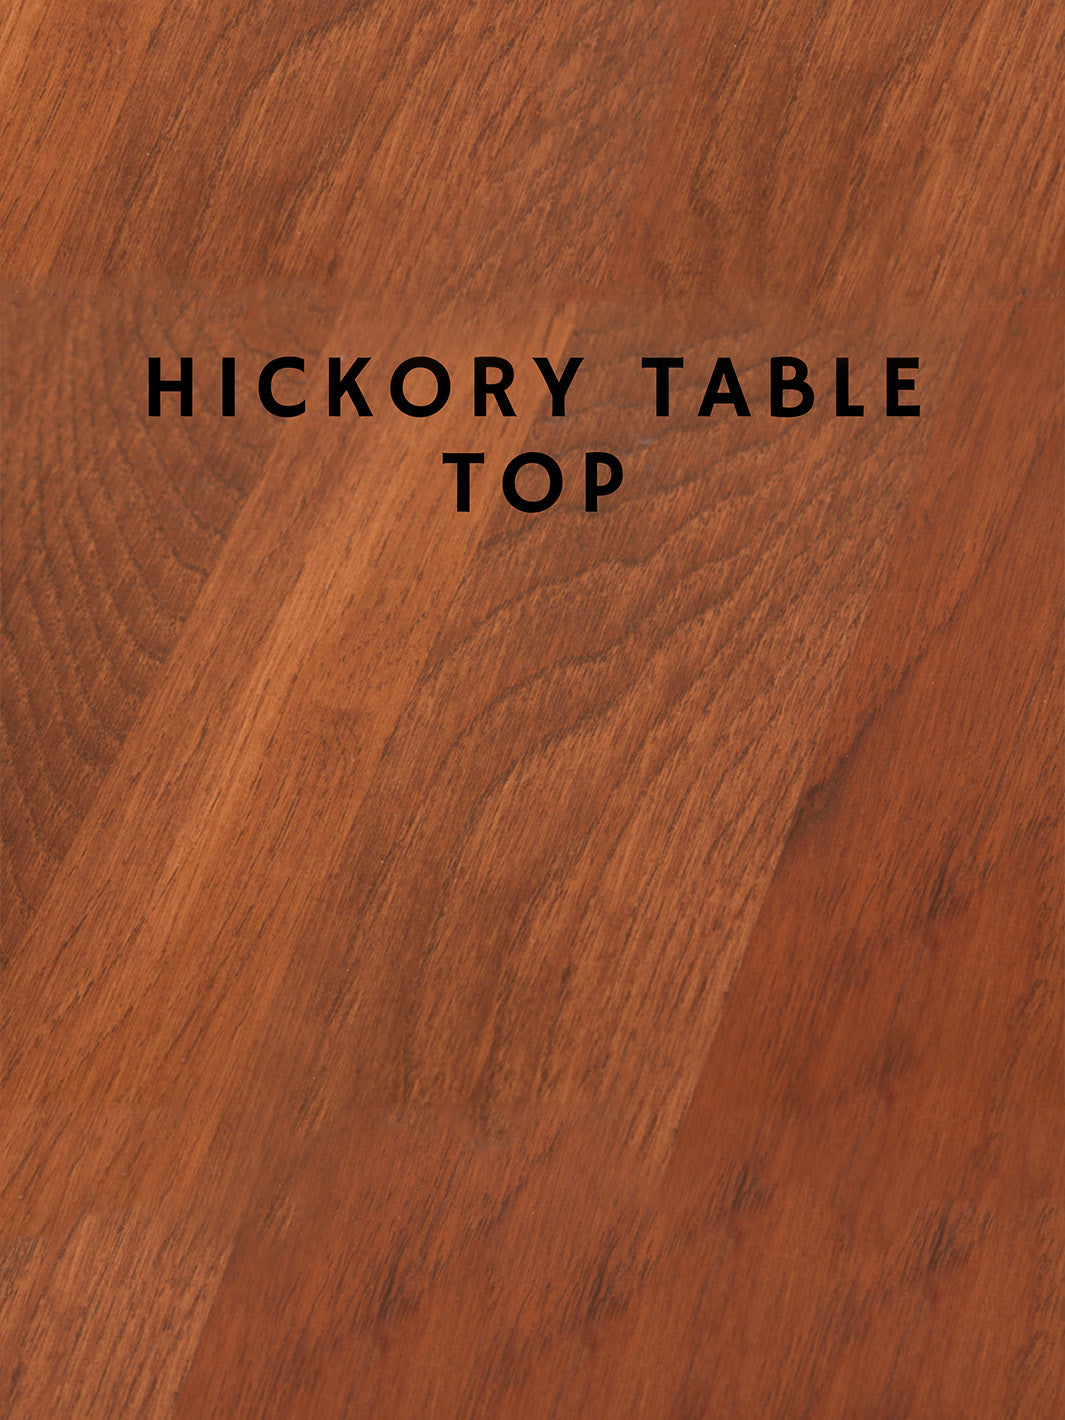 Hardwood Epoxy River Rock Coffee Table Earthly Comfort Woodworking Earthly Comfort  -10